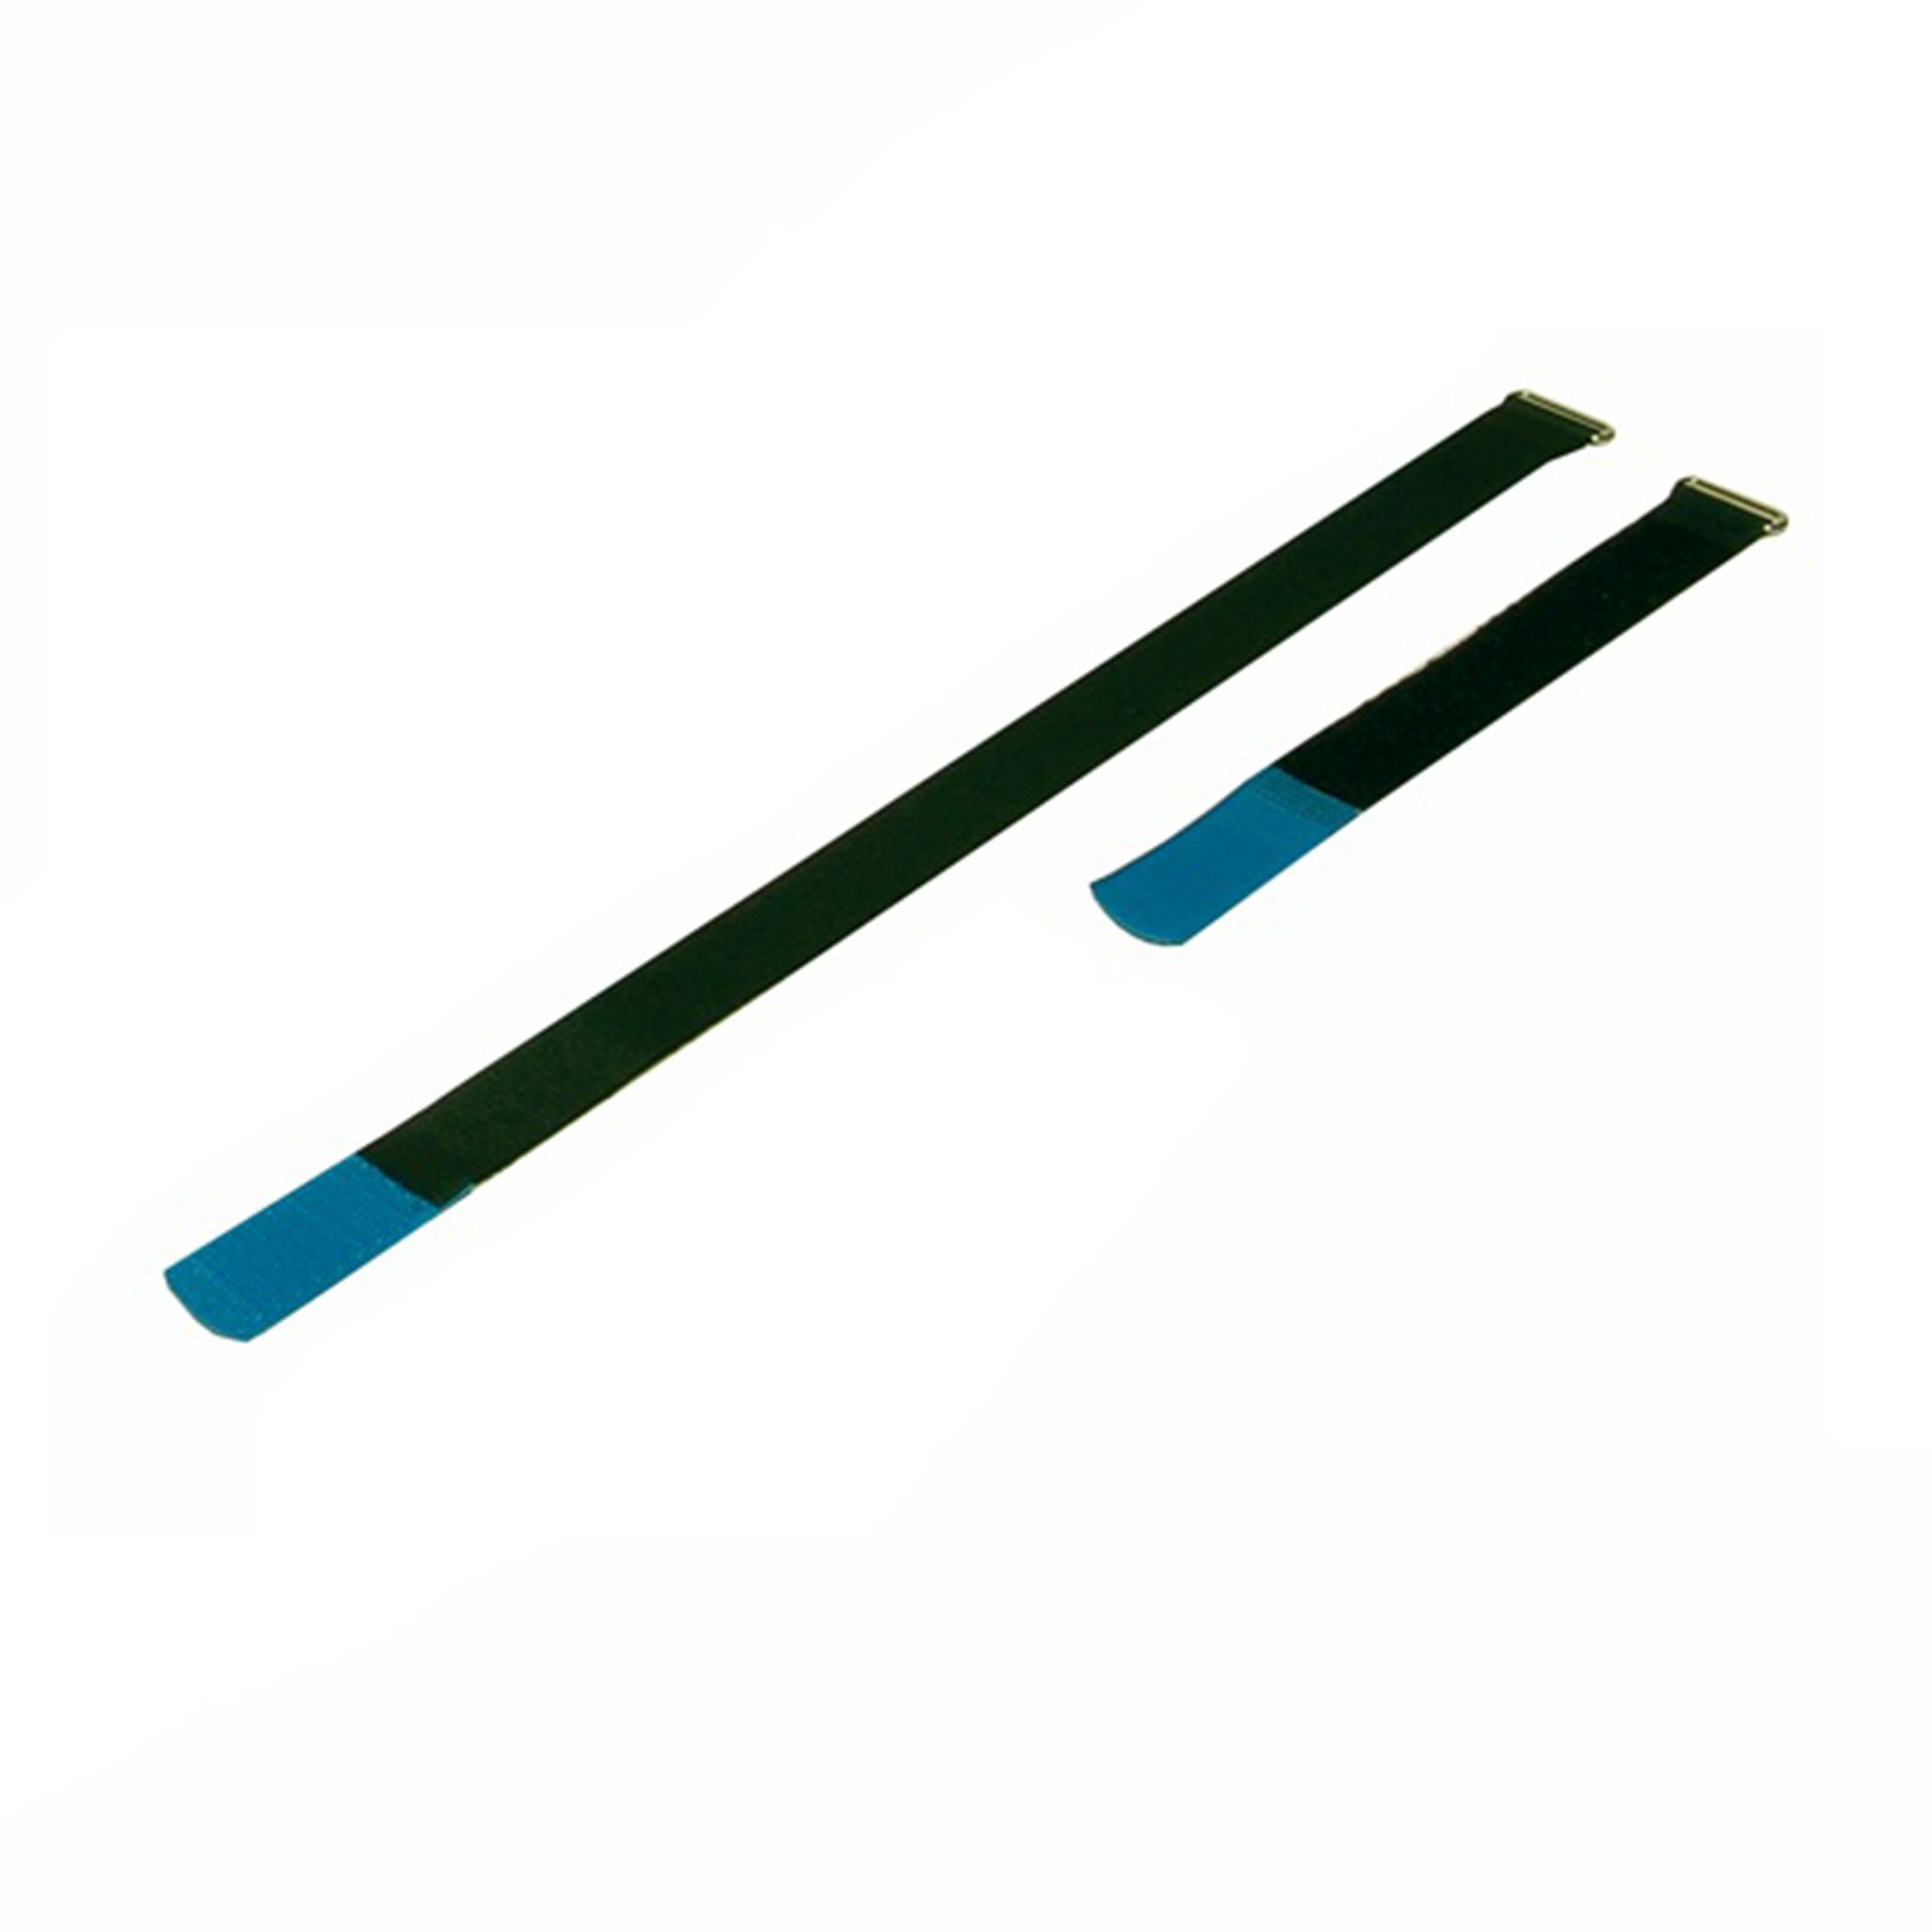 Kabelbinder 170x25mm met haaktip blauw, (10 stuks) - a2517h